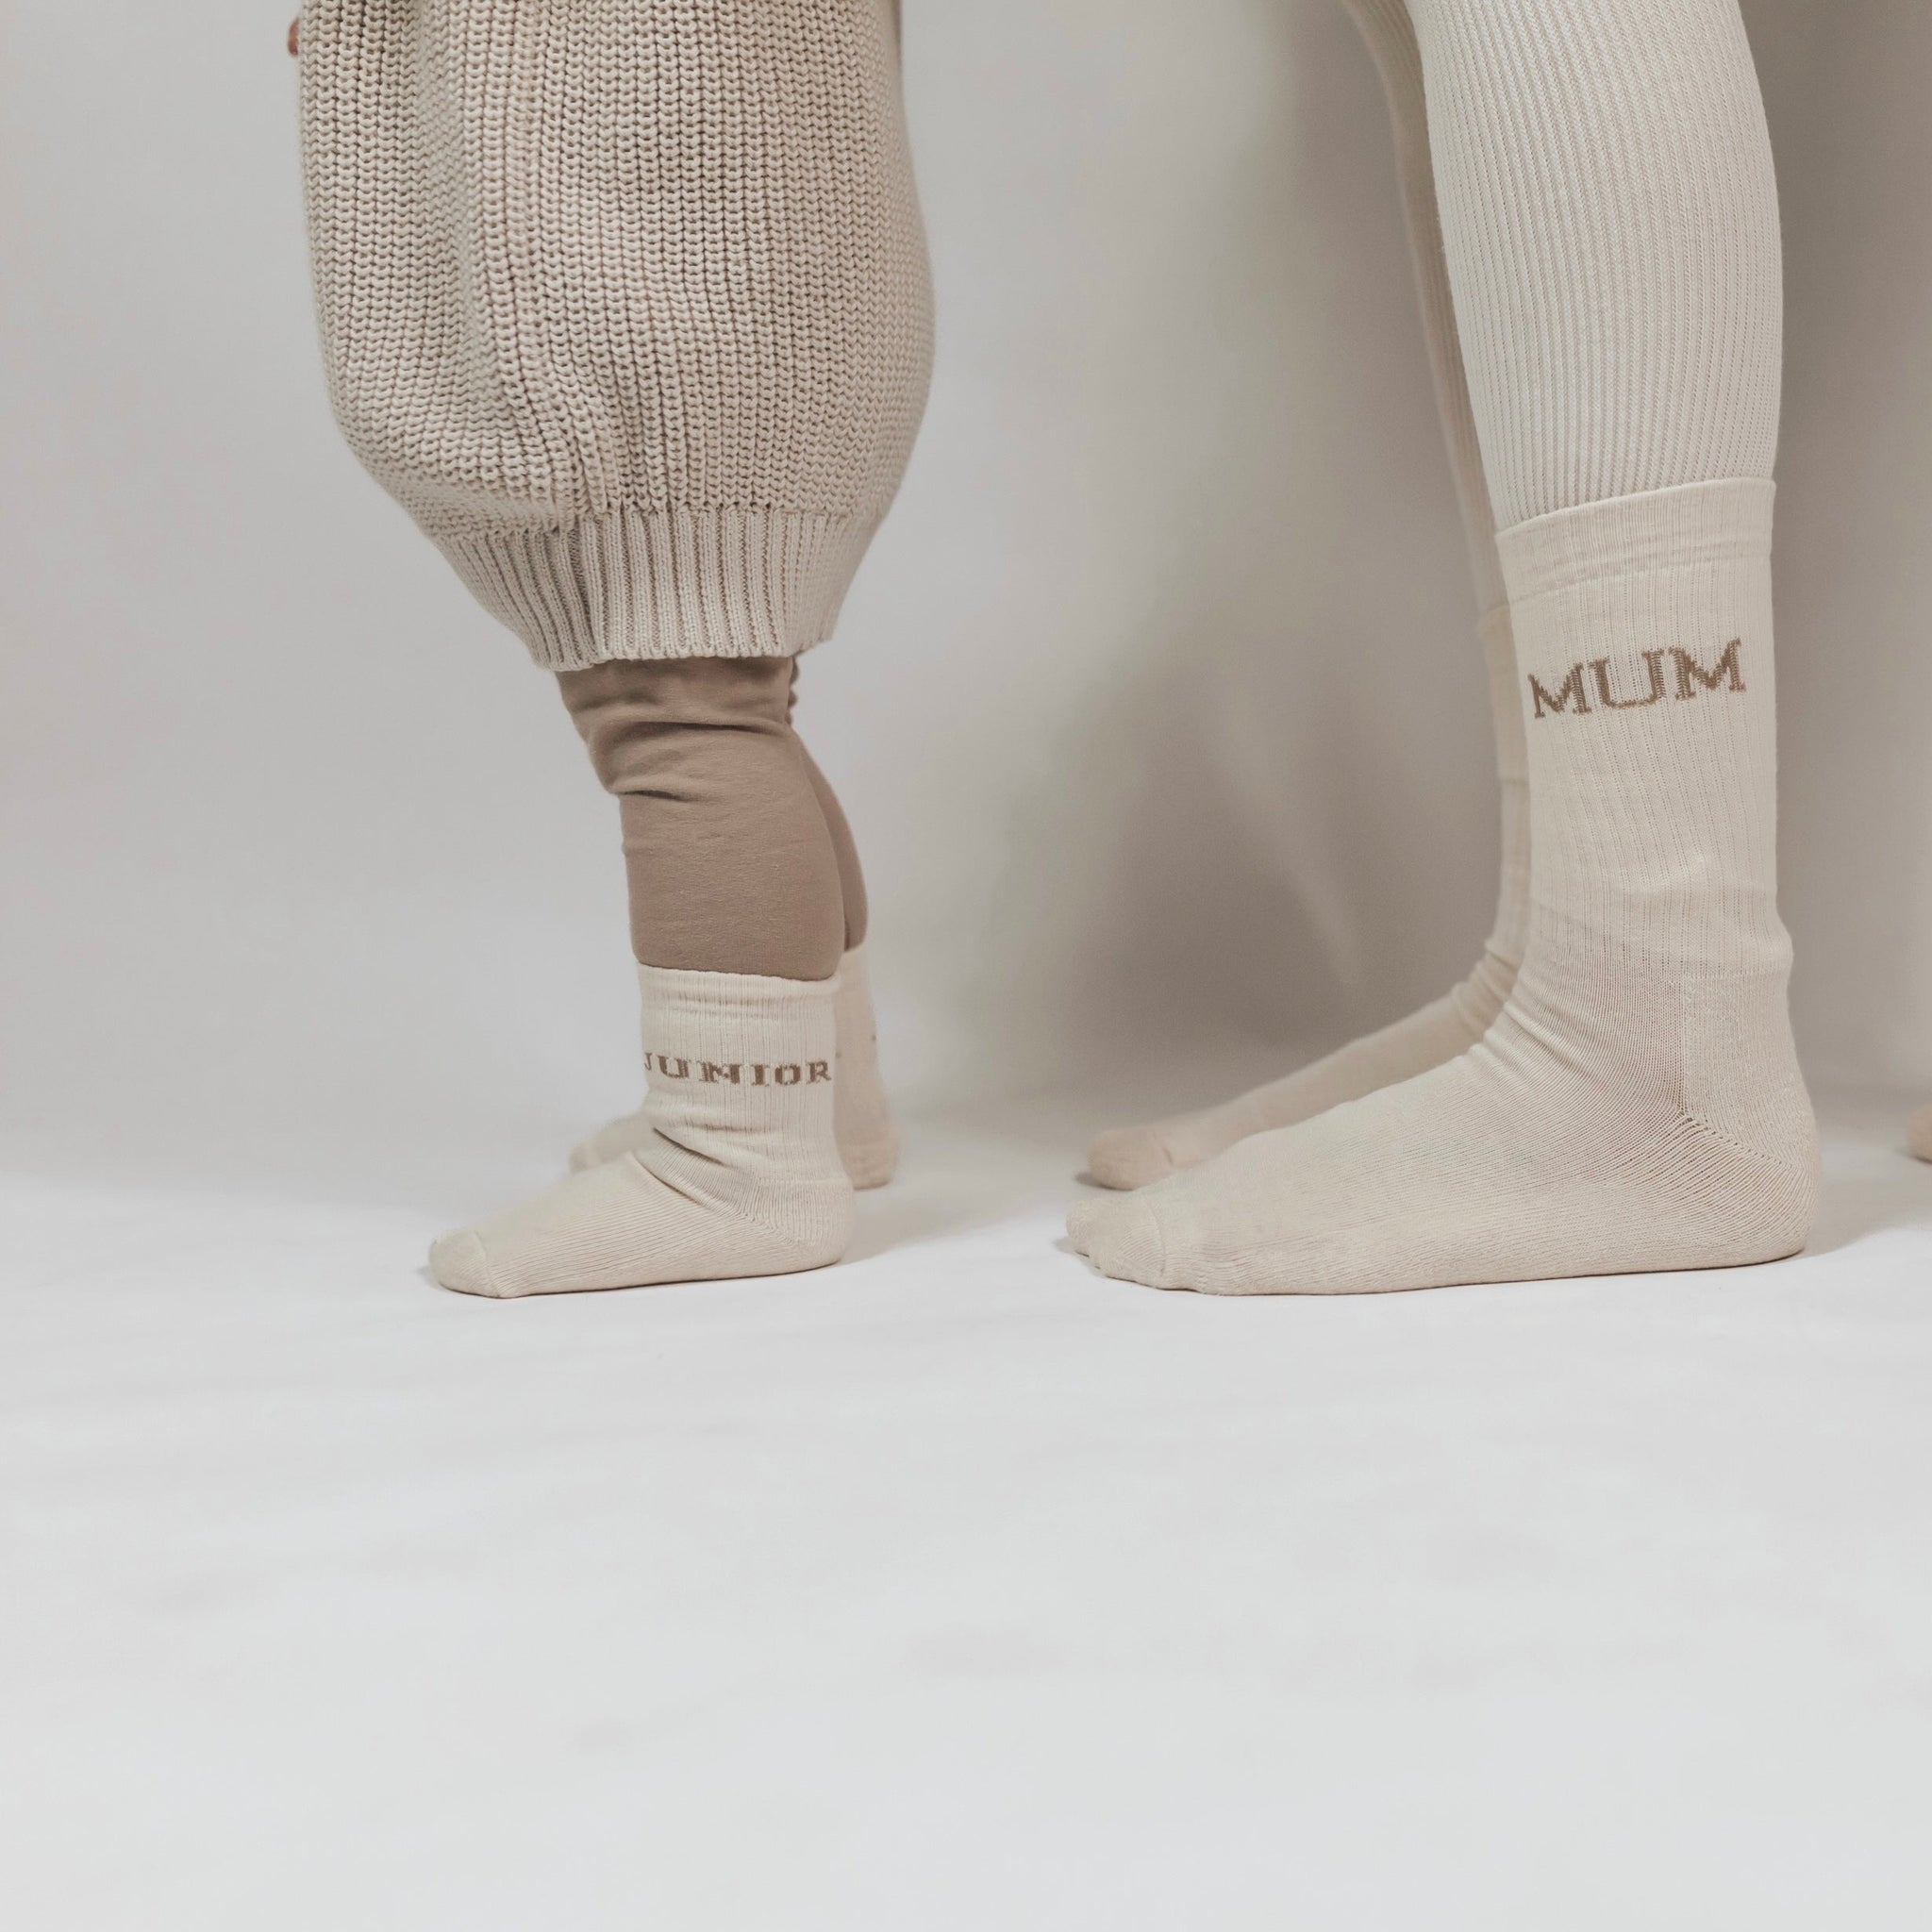 Organic Socks - MUM